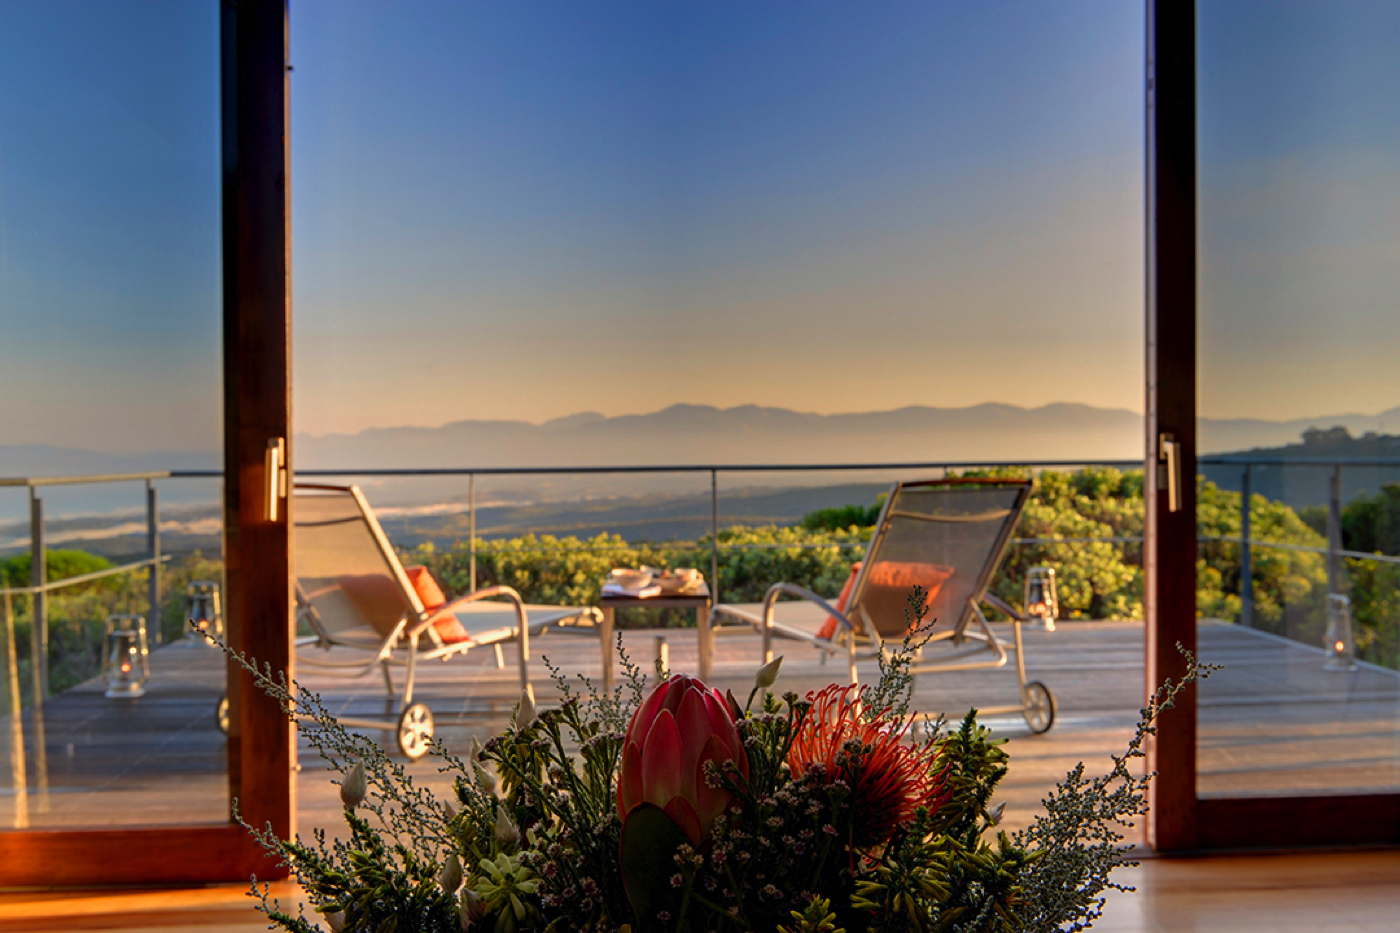 luxury-suites-service-hotelsuite-South Africa-Walker Bay-Gaansbaai